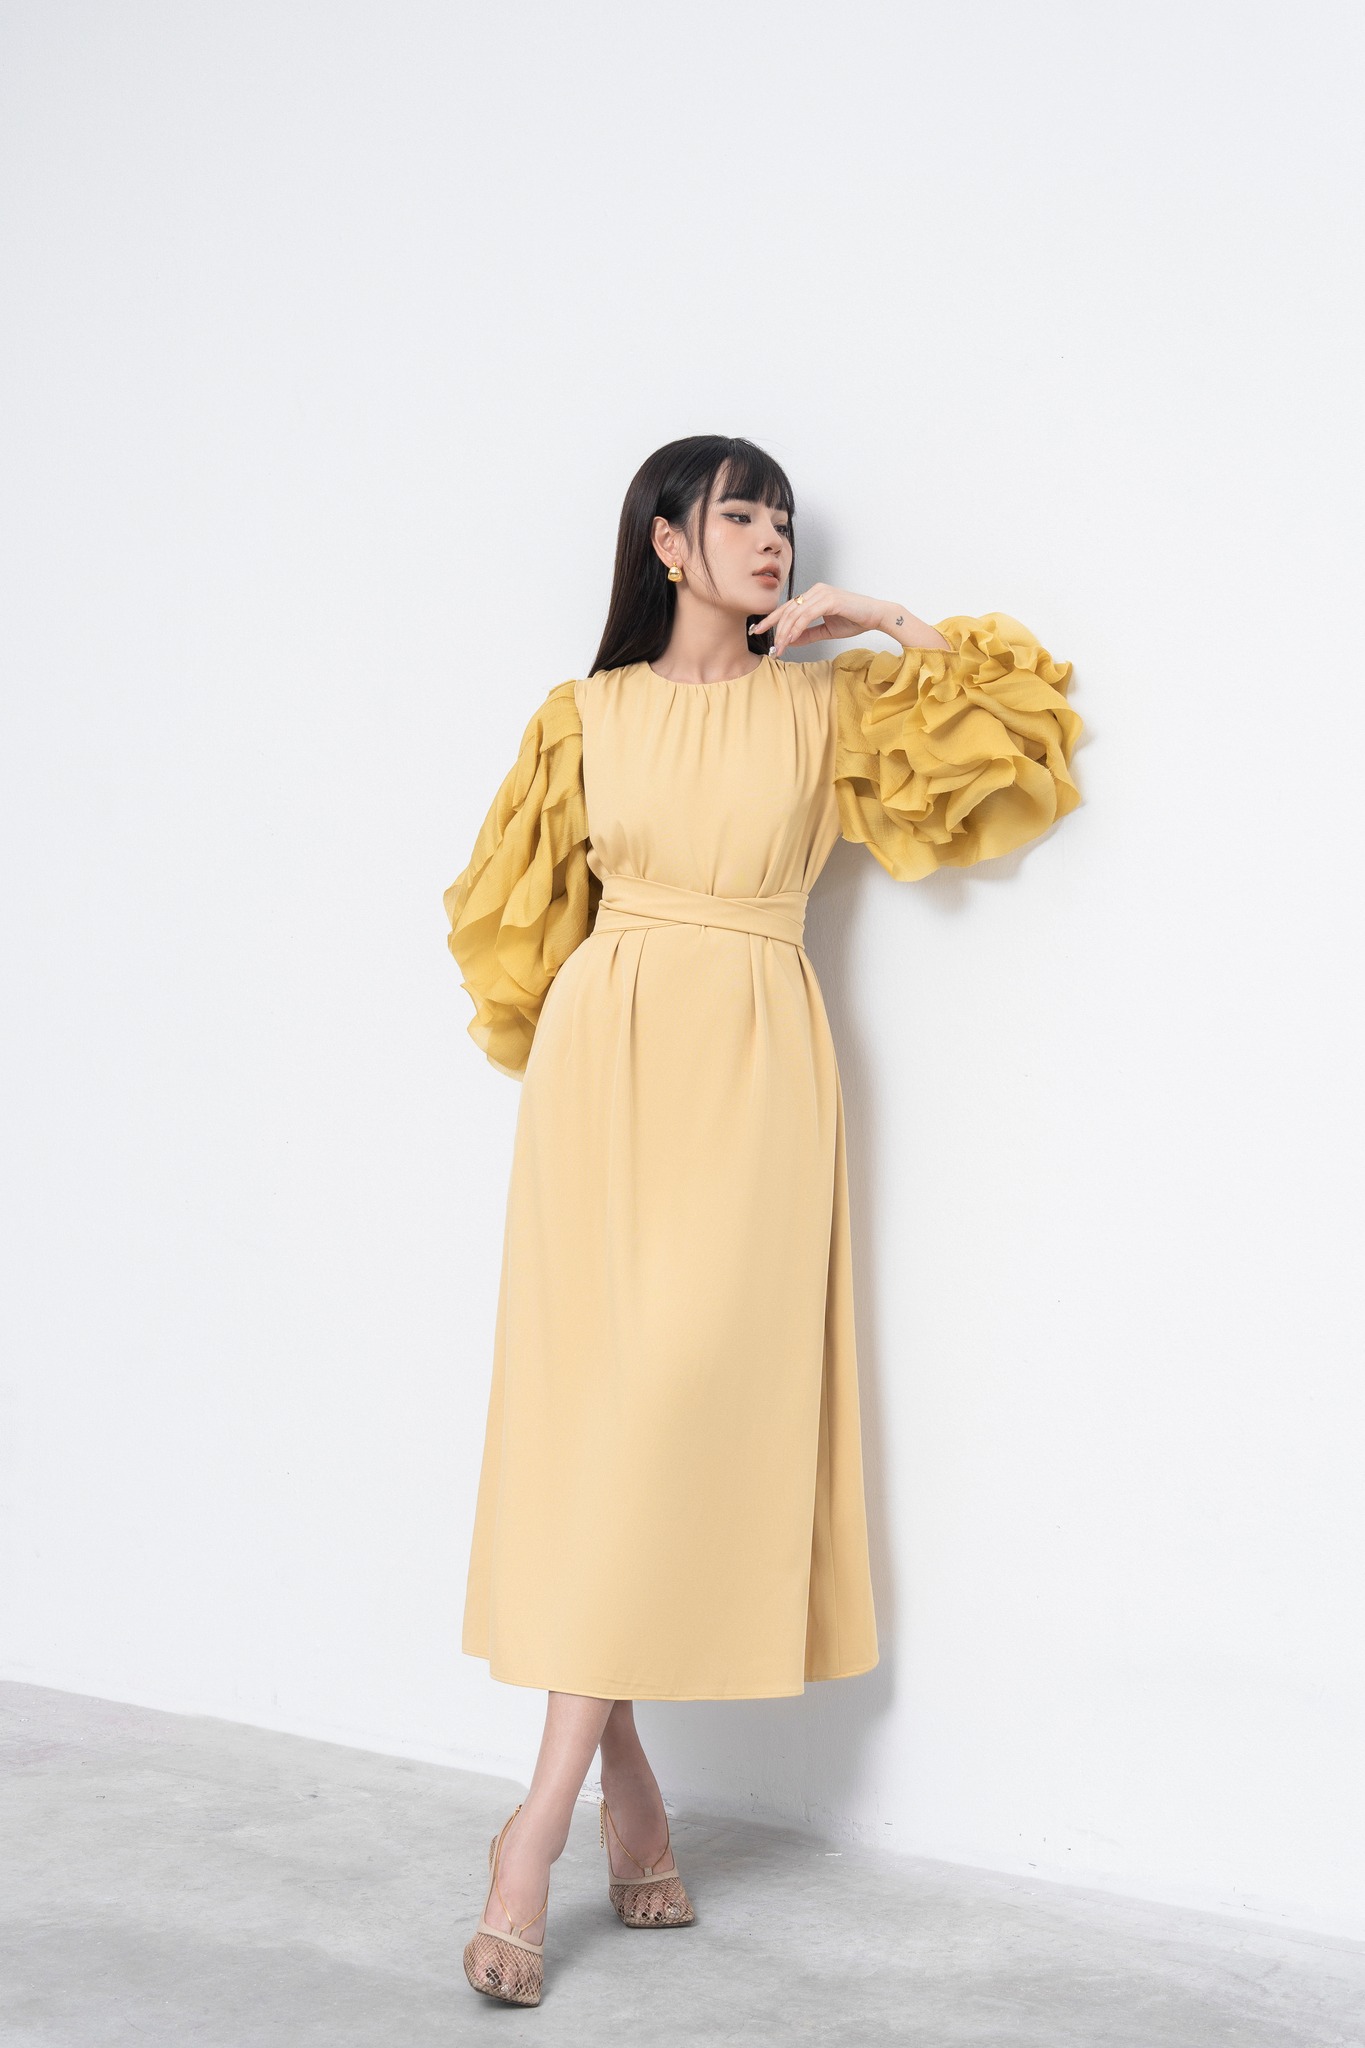 Váy maxi cổ yếm cột nơ TSV1110 chất liệu đũi mát - Váy suông nhẹ nhàng công  sở phối màu cách điệu | Lazada.vn